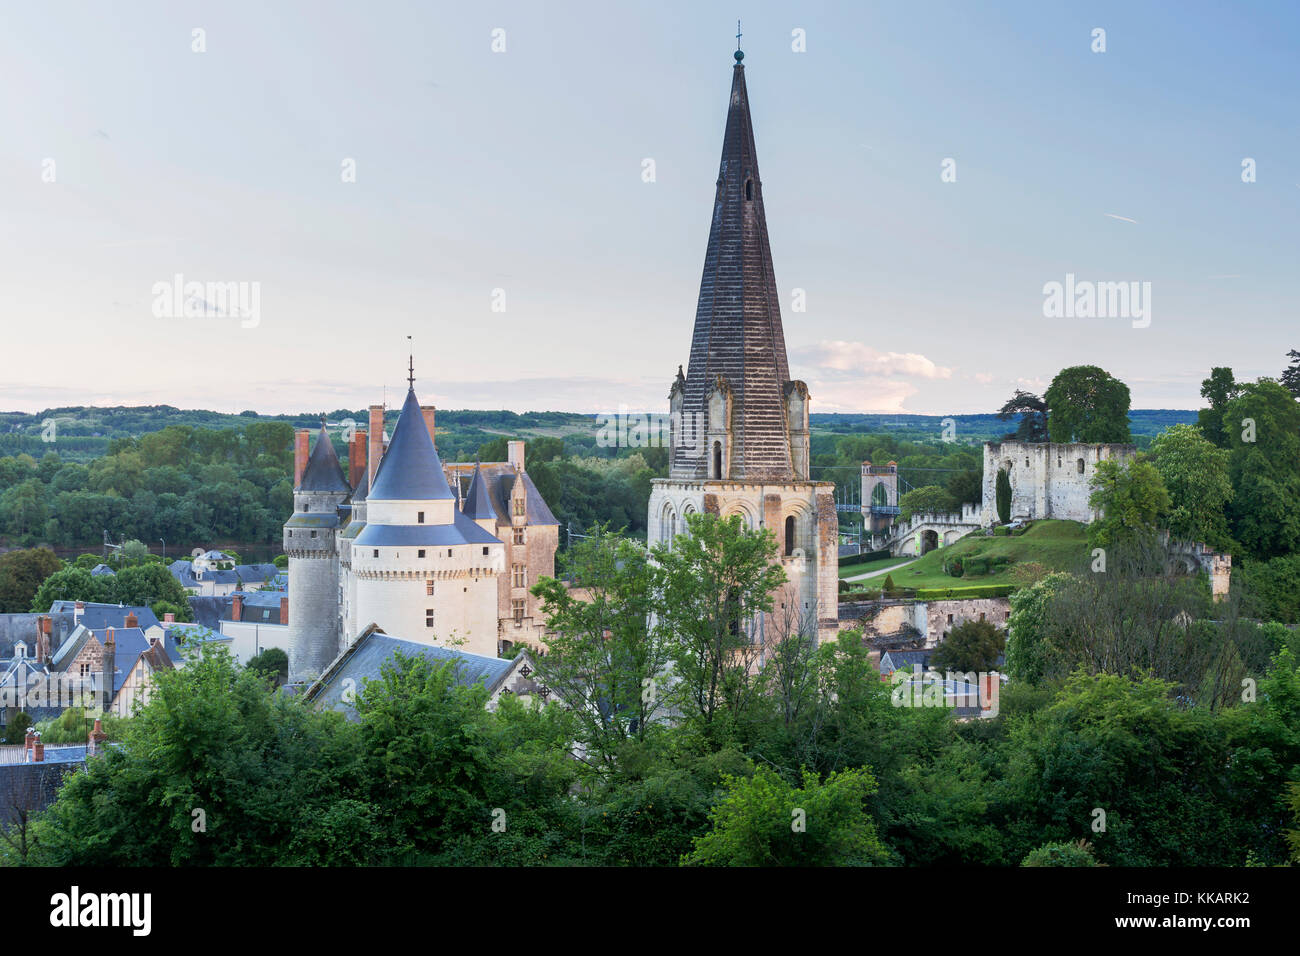 La ciudad de Langeais en Francia que se asienta a orillas del río Loira, sitio del patrimonio mundial de la UNESCO, el valle del Loira, Indre et Loire, Francia, Europa Foto de stock